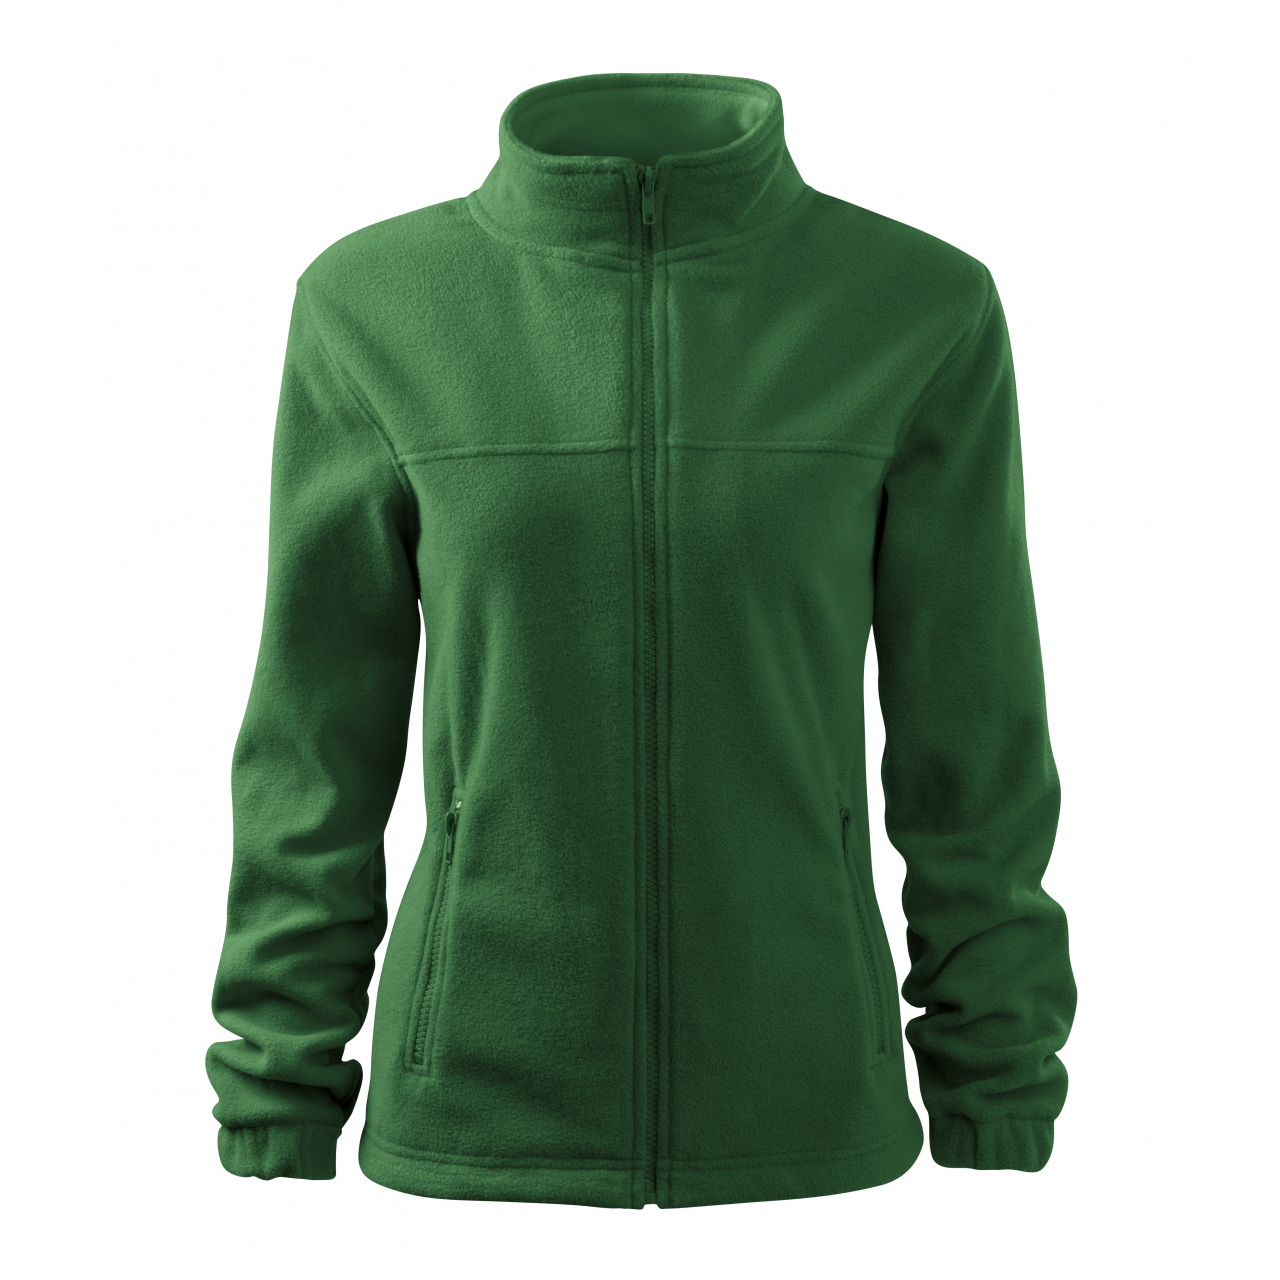 Bunda dámská Malfini Jacket - tmavě zelená, XL